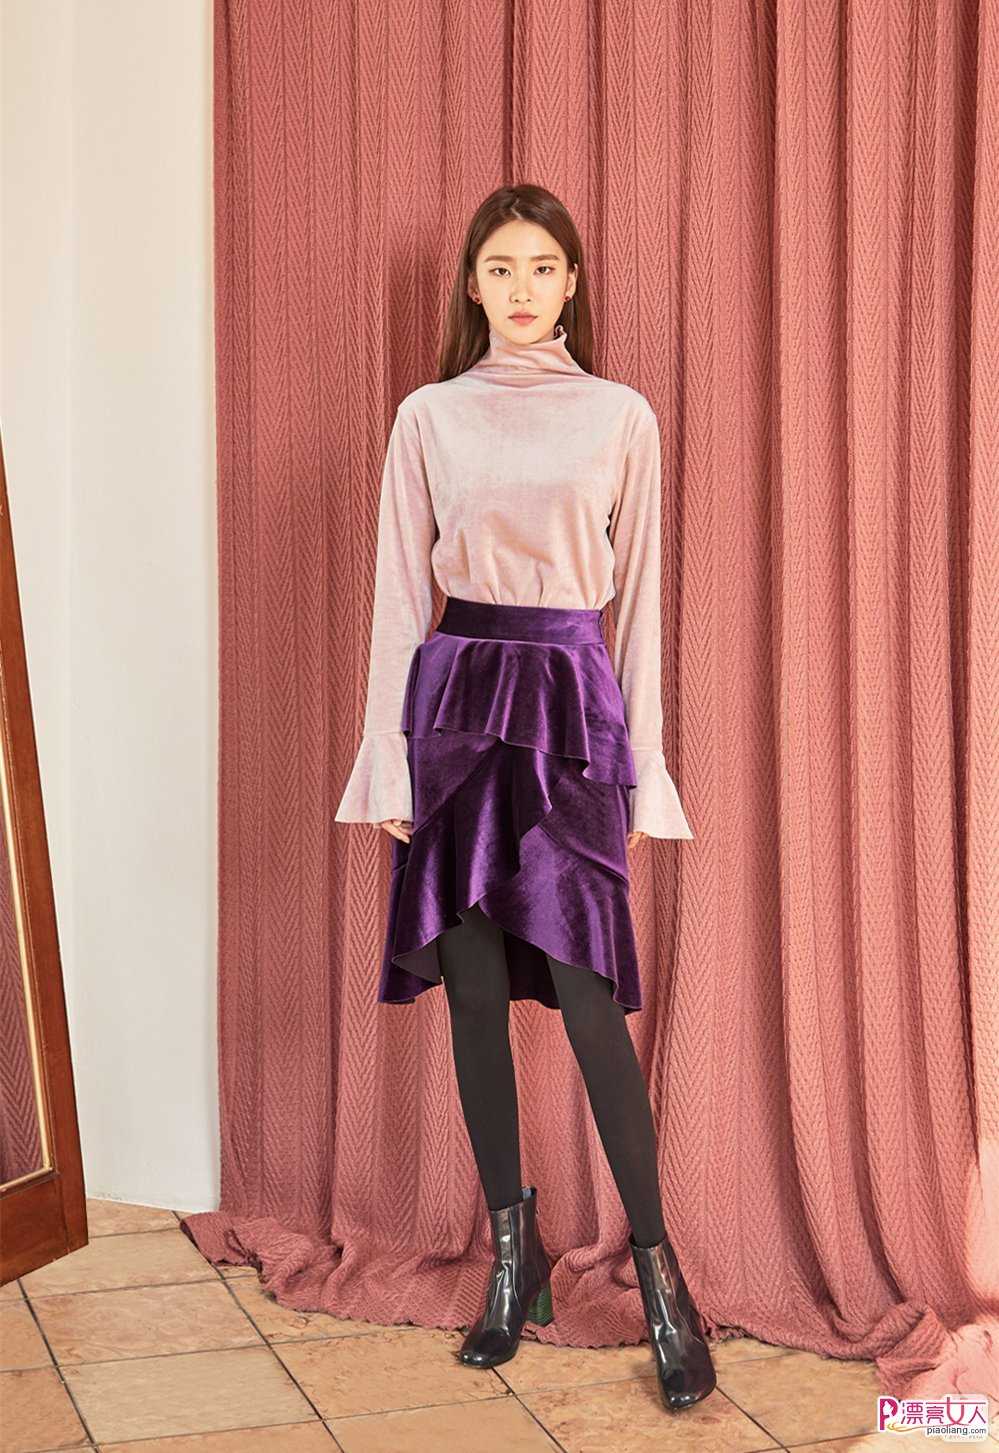  2018流行色紫外光色服装搭配示范